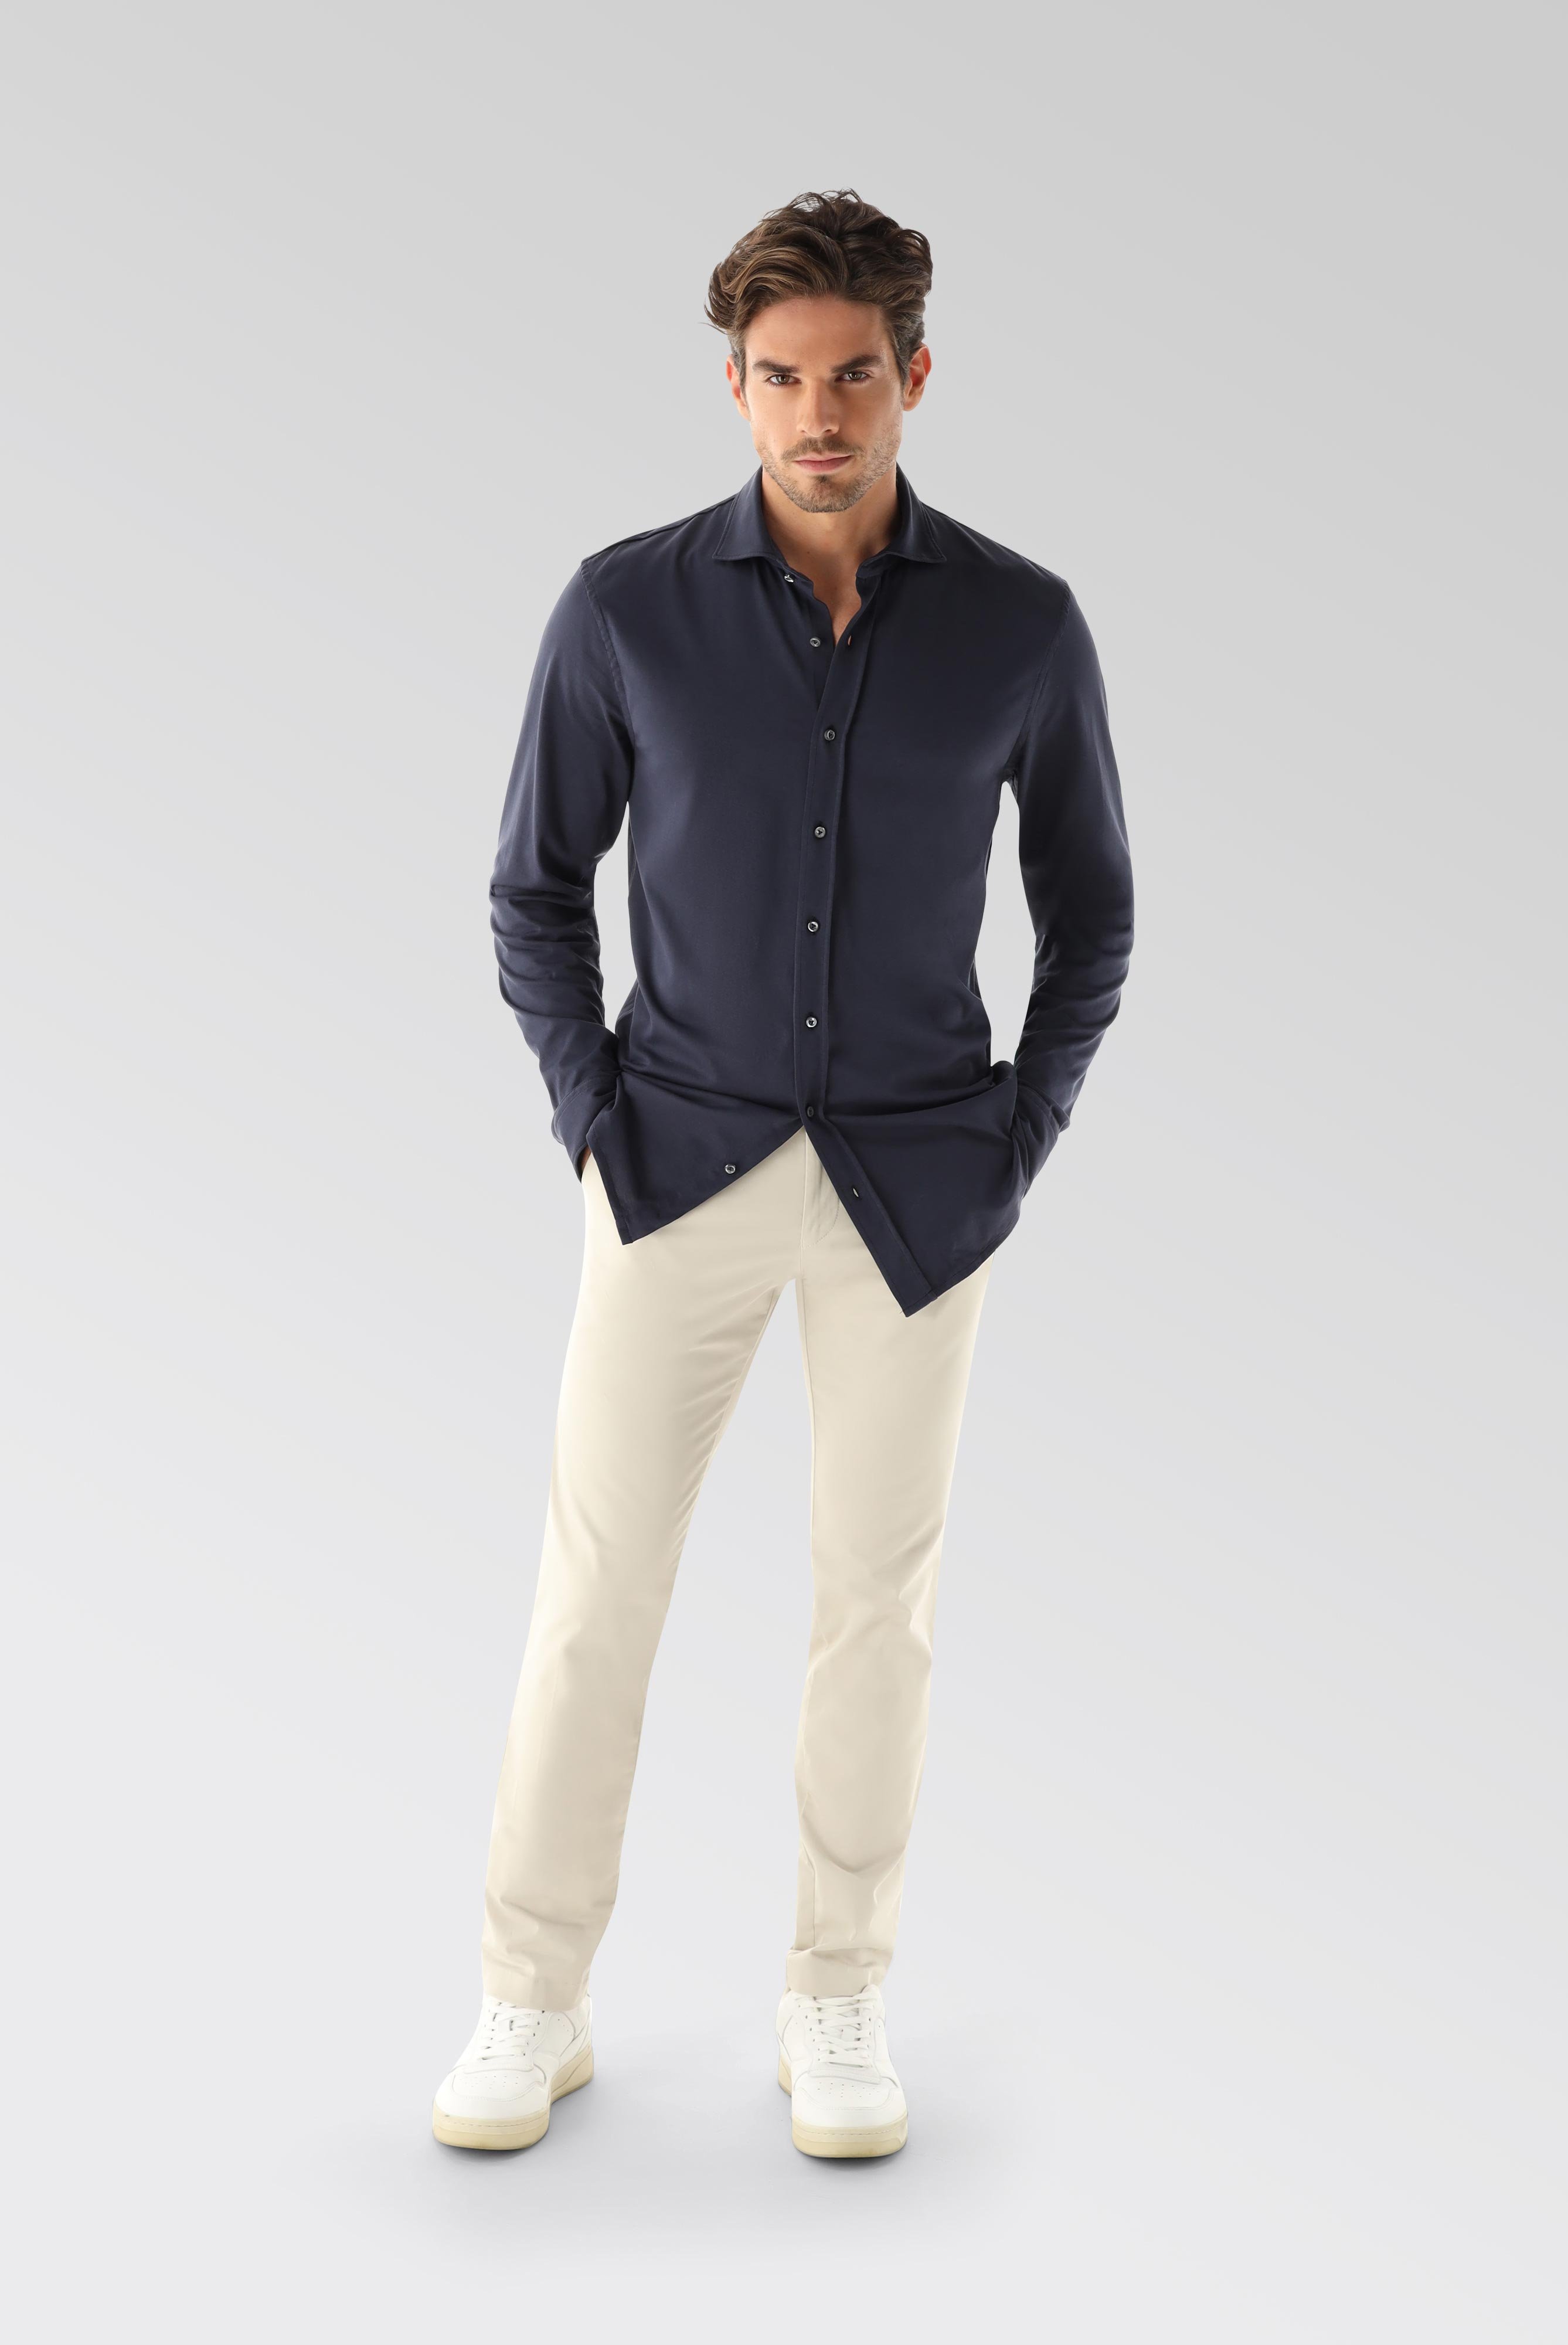 Jersey Hemden+Jersey Shirt Urban Look Slim Fit+20.1651.UC.Z20044.790.S